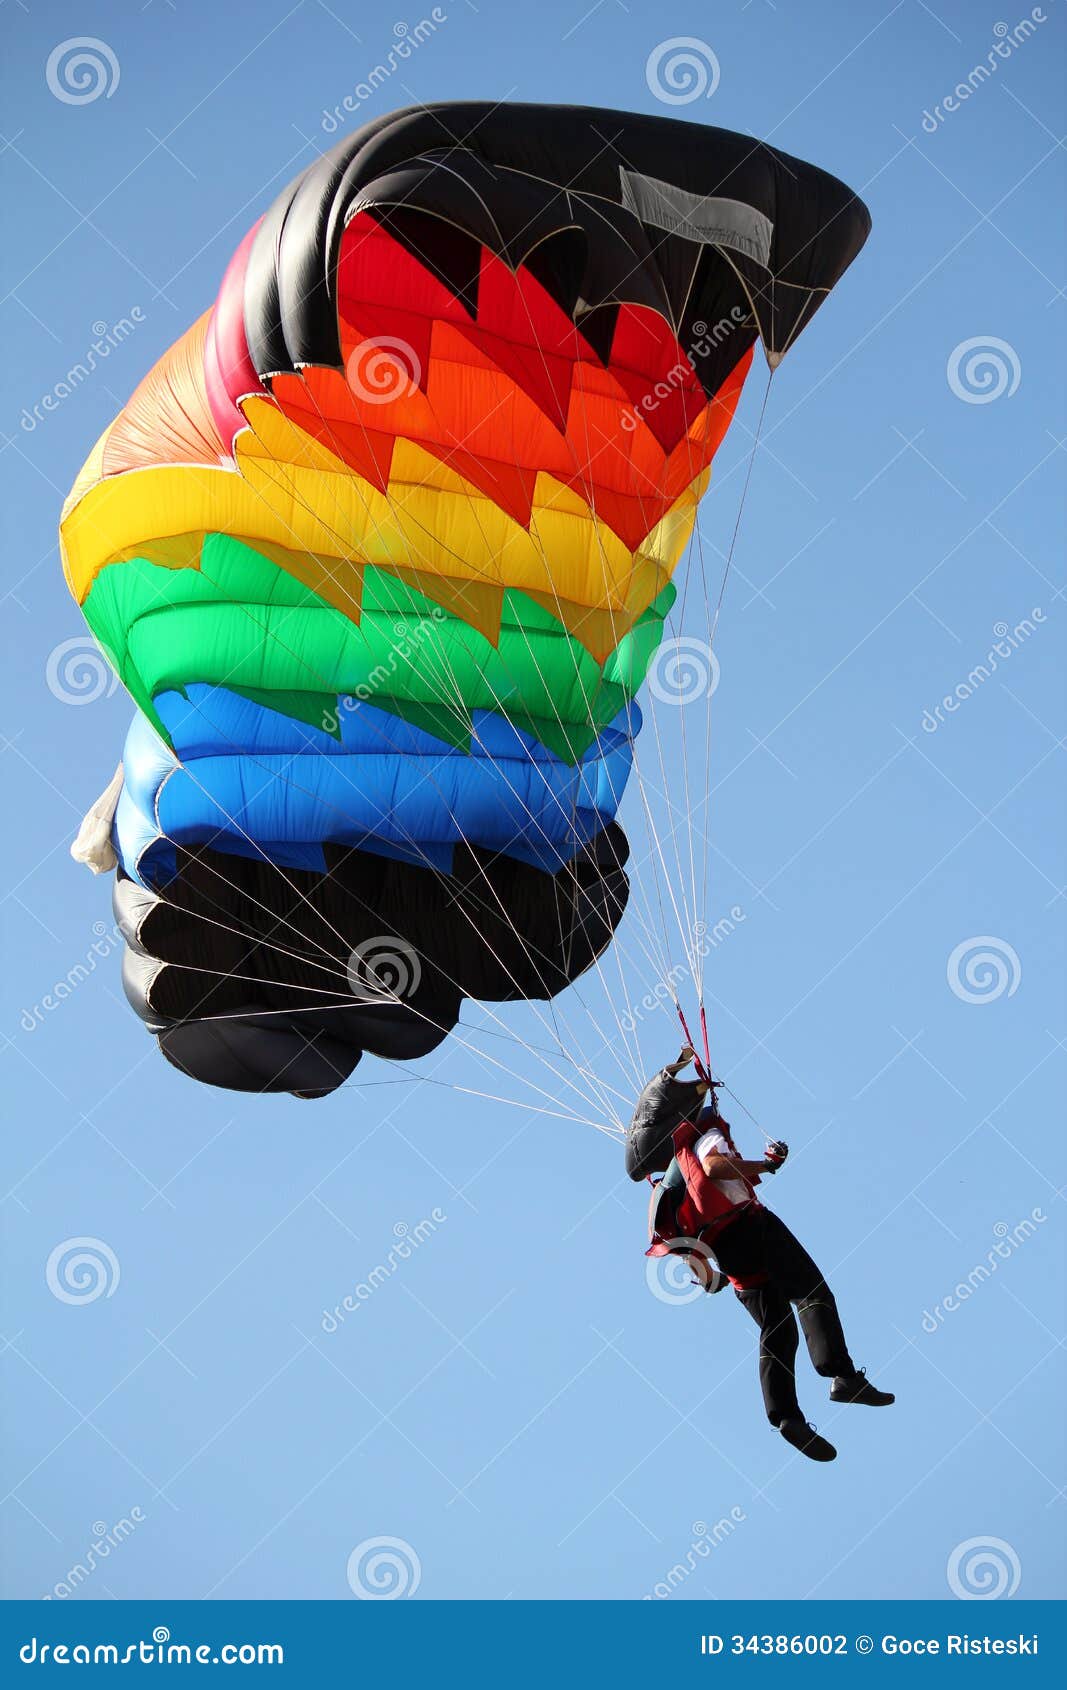 parachutist with colorful parachute